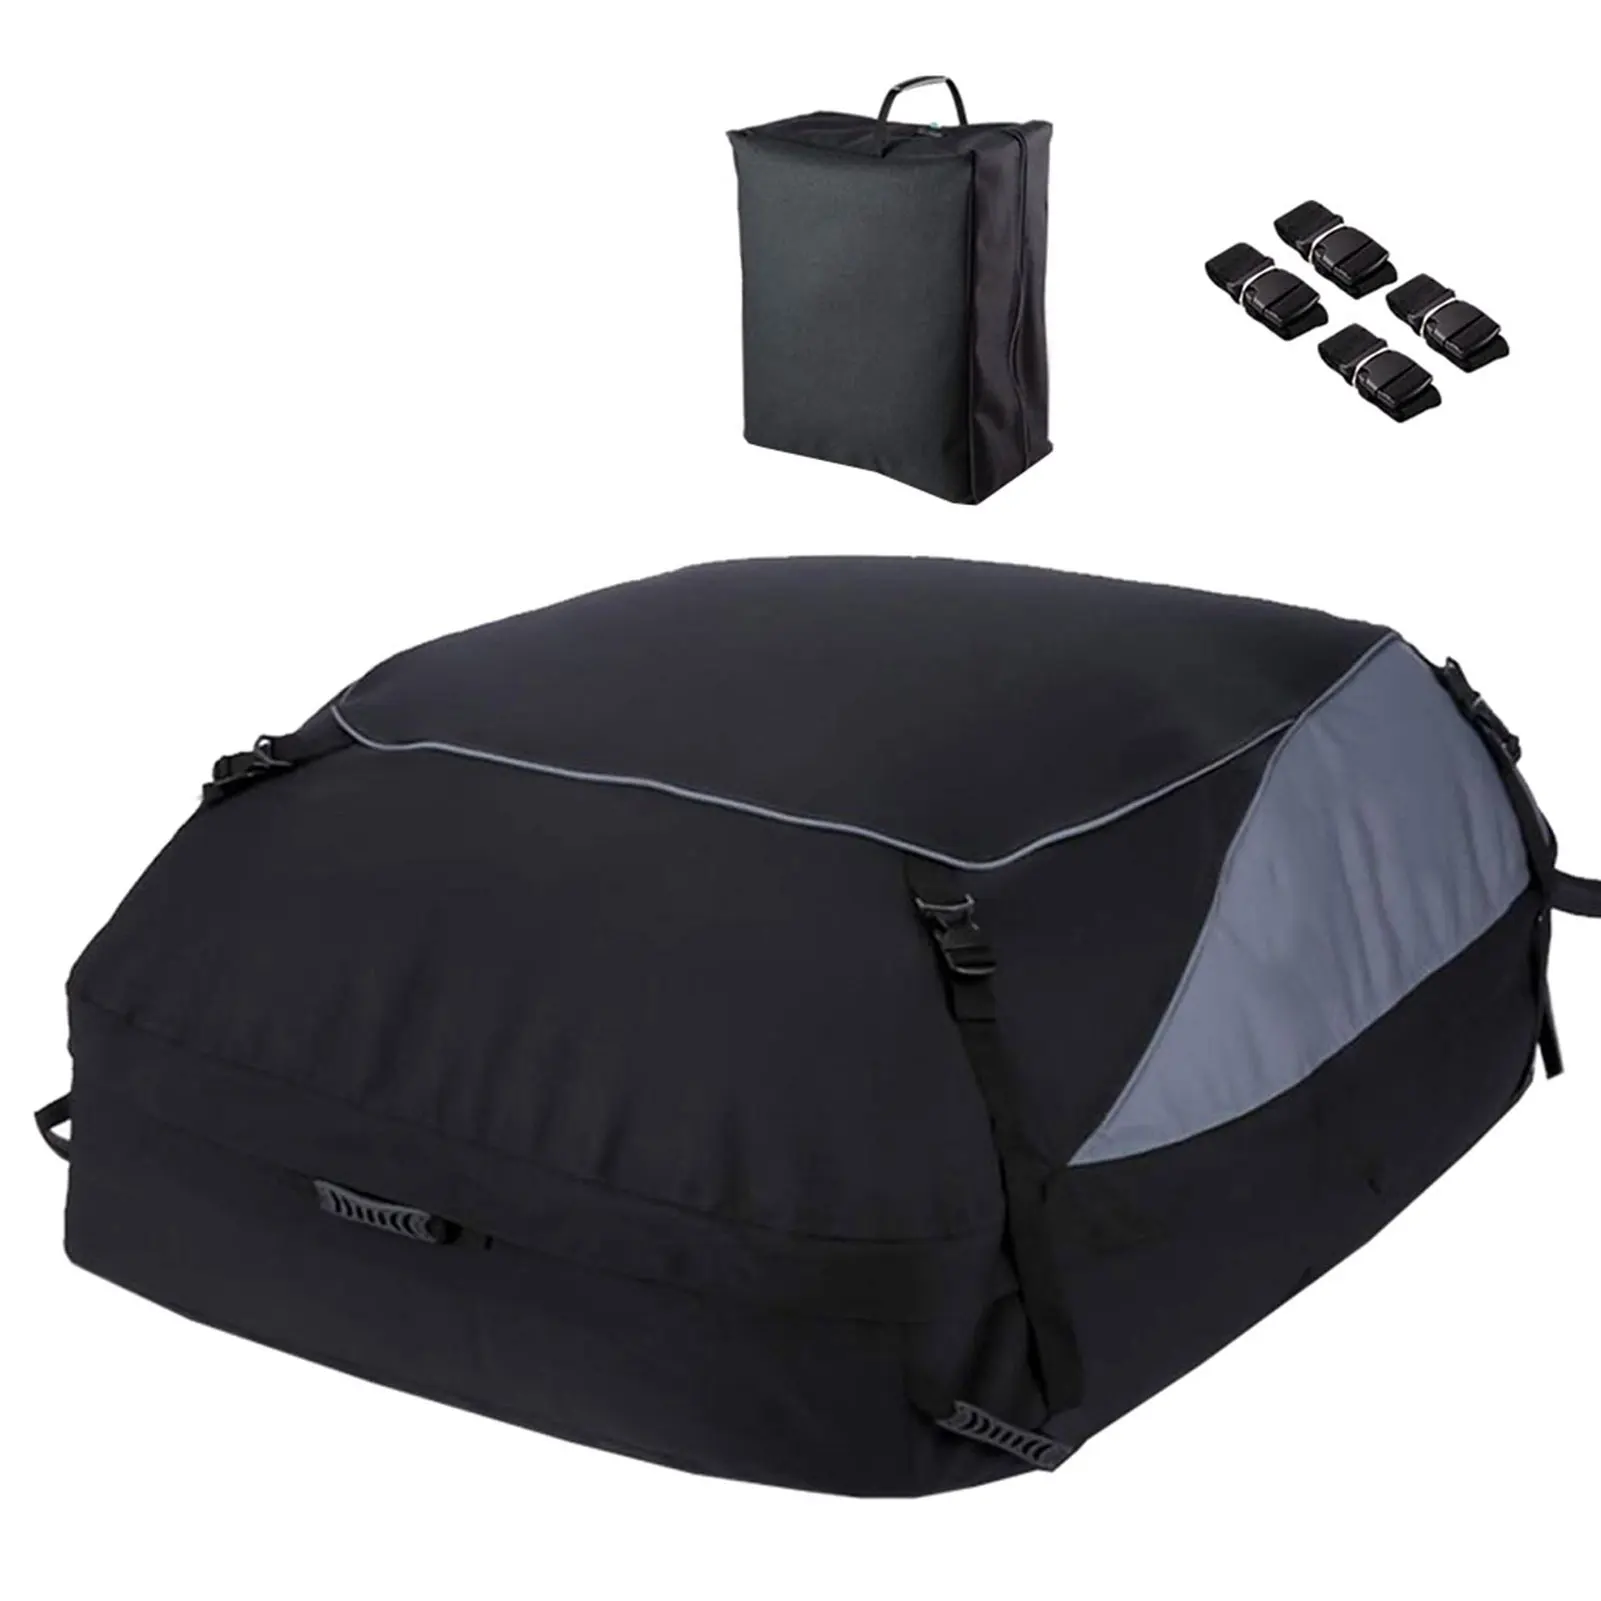 Прочная сумка для крыши автомобиля, Универсальная водонепроницаемая сумка для крыши автомобиля, пылезащитная сумка для багажа на крыше автомобиля, уличная сумка для крыши из ткани Оксфорд 600D